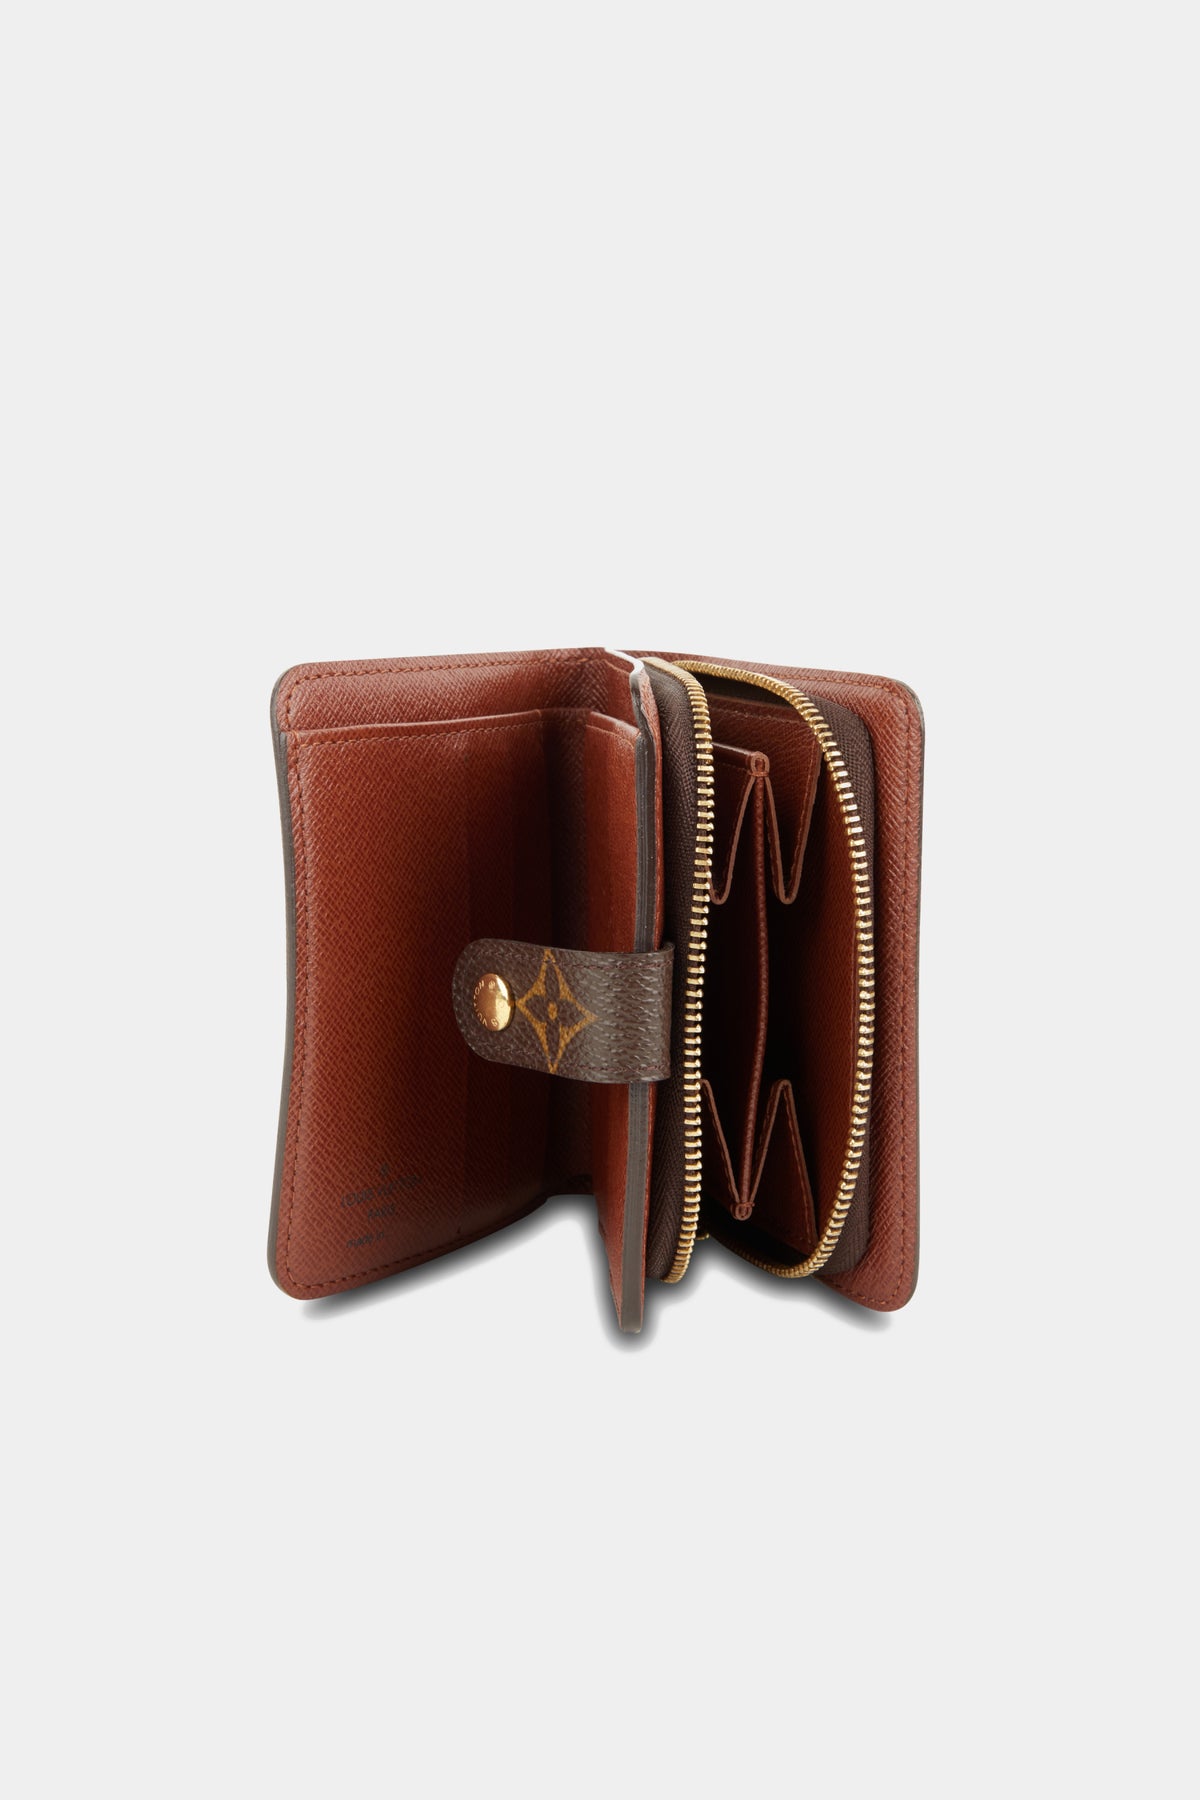 Louis Vuitton LV Monogram Compact Wallet - Black Wallets, Accessories -  LOU784650